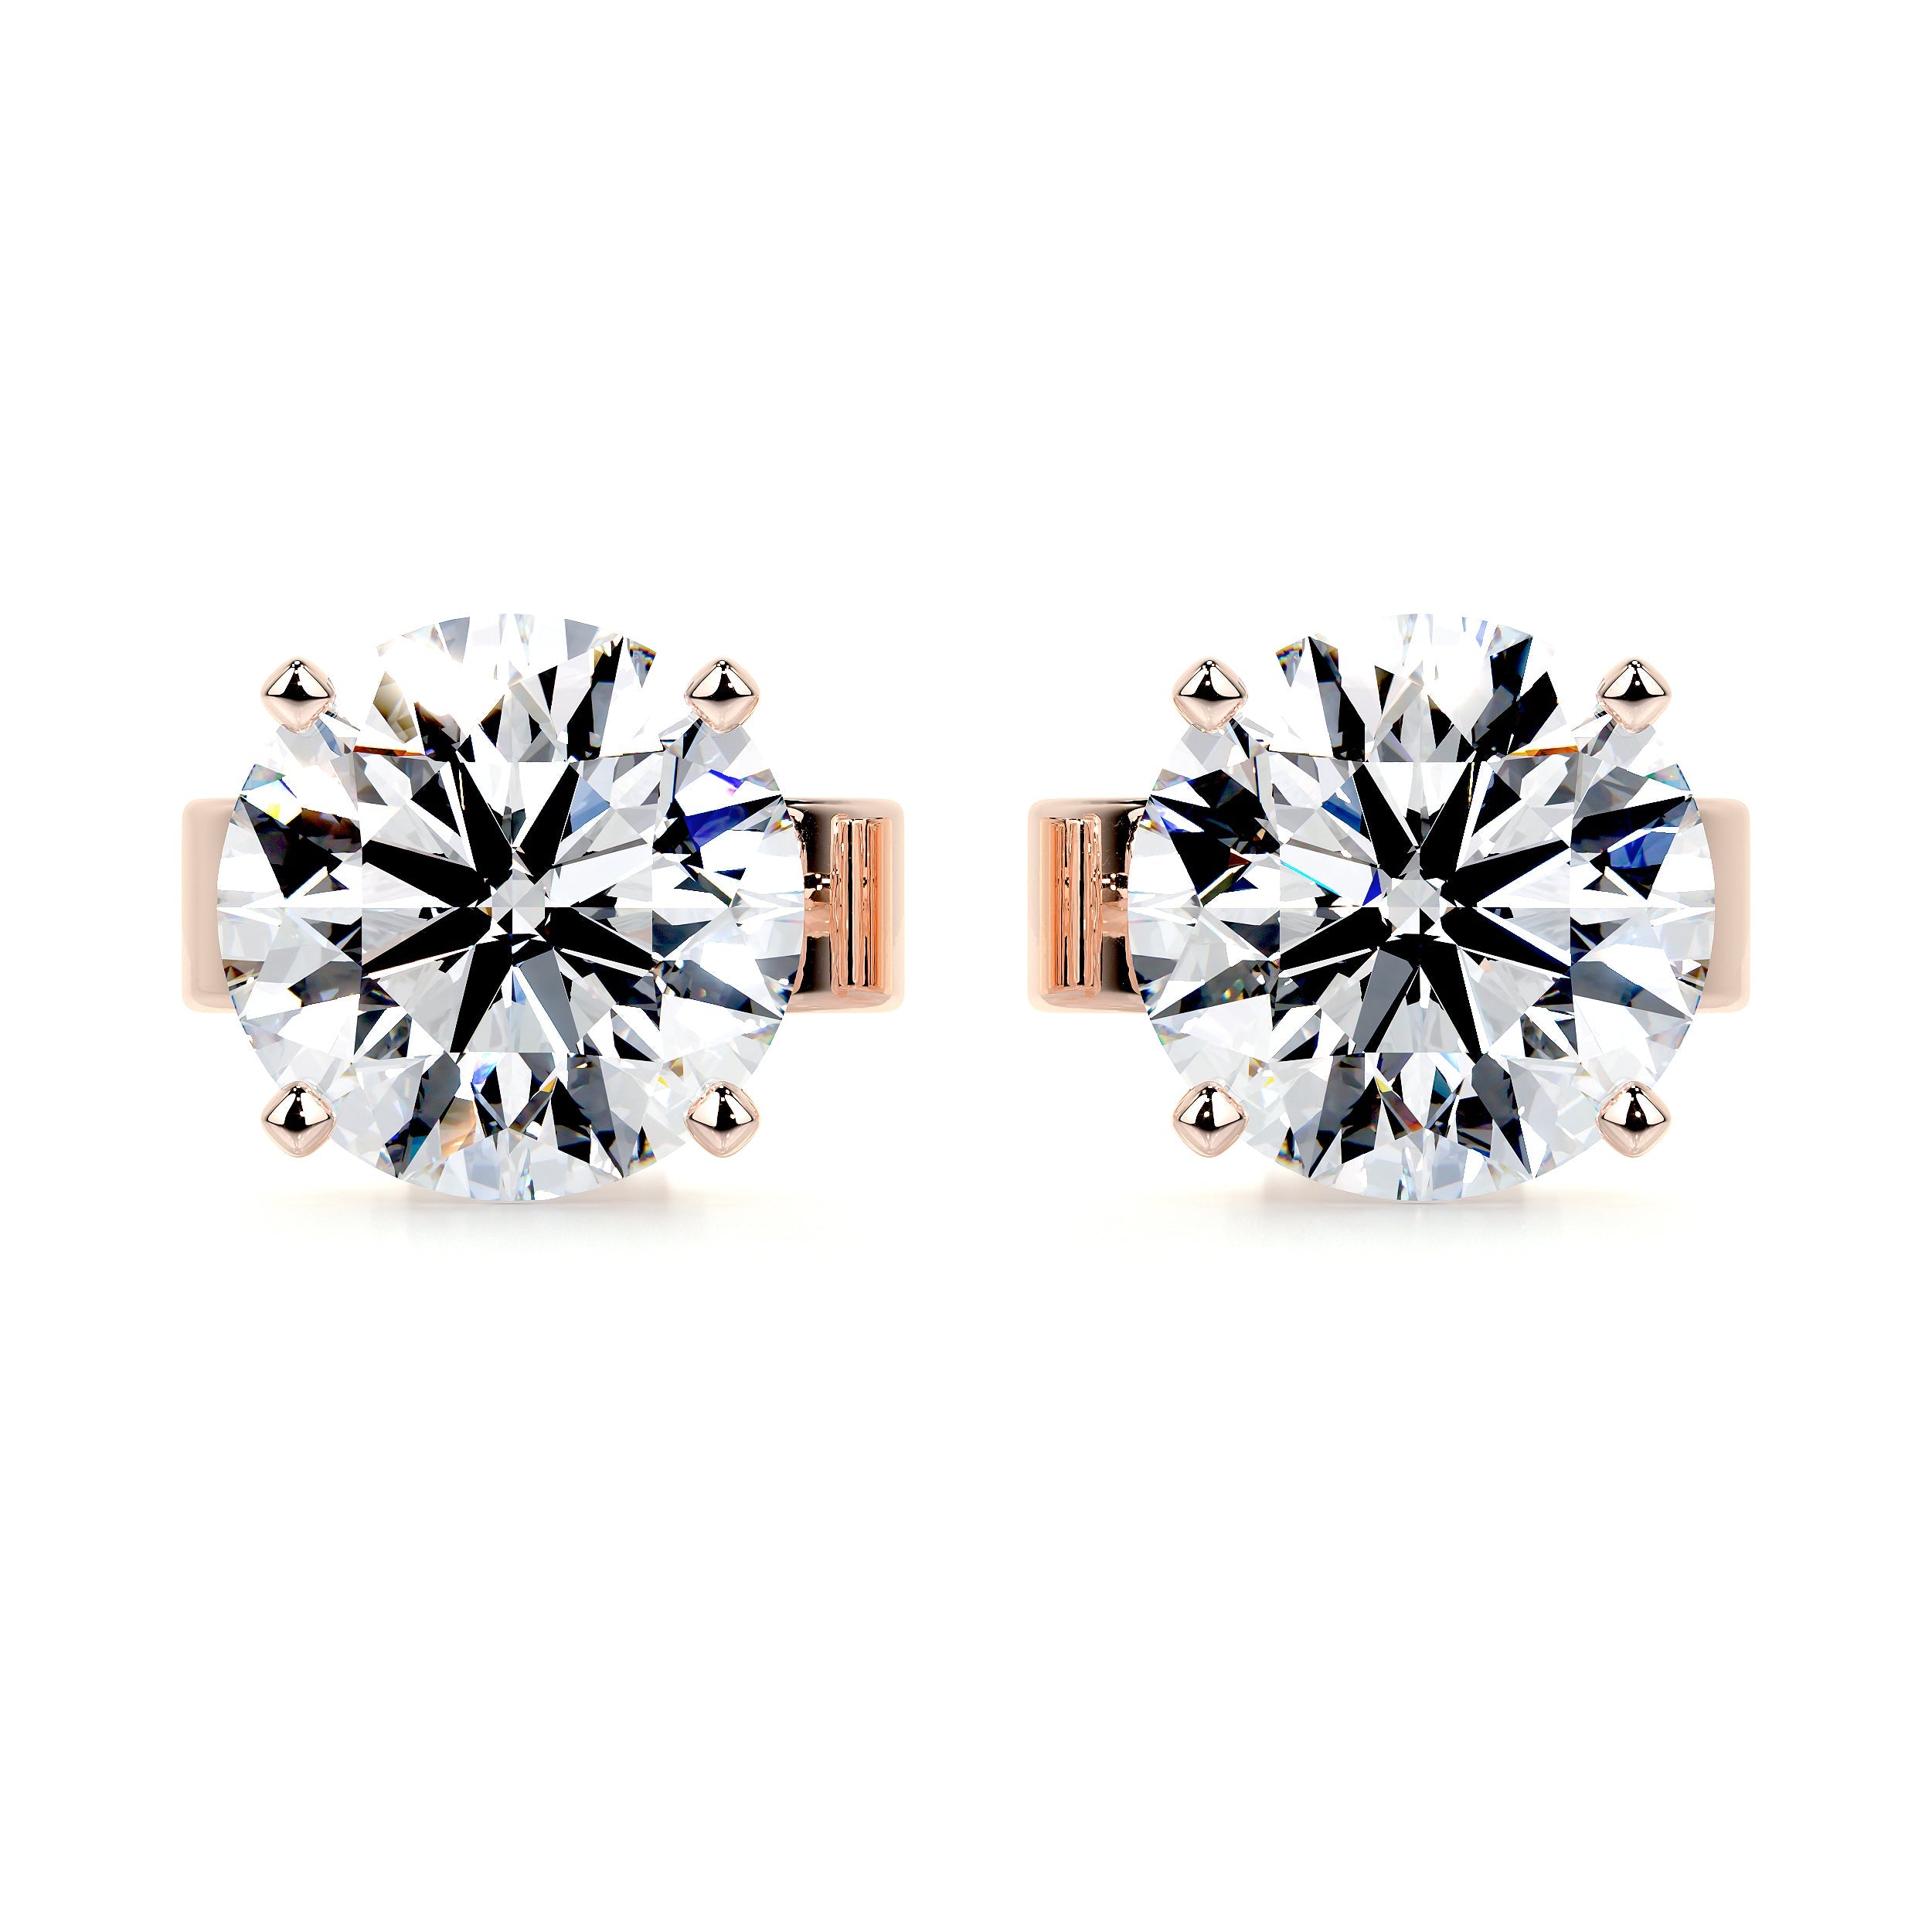 Allen Lab Grown Diamond Earrings   (6 Carat) -14K Rose Gold